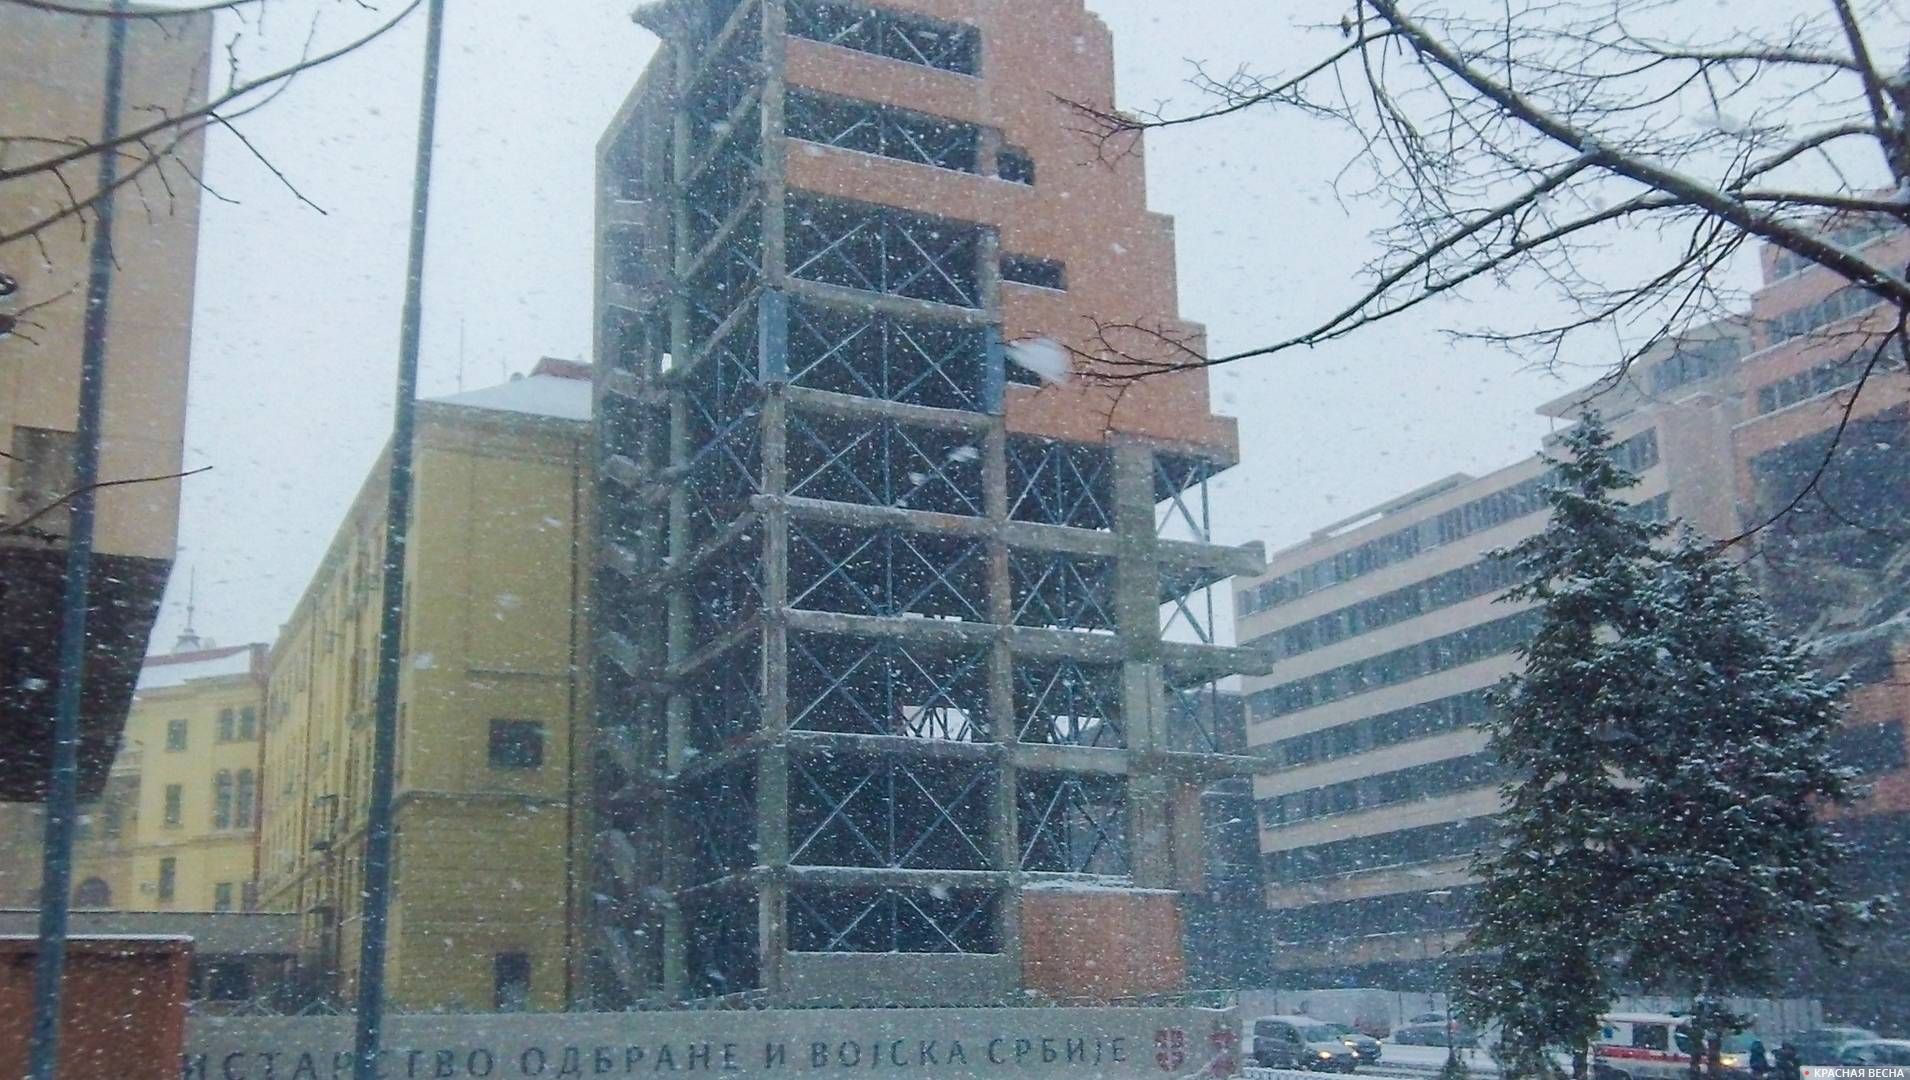 001-Разрушенный Главный штаб Вооруженных сил Сербии, Мемориал бомбардировкам НАТО, Белград, Сербия